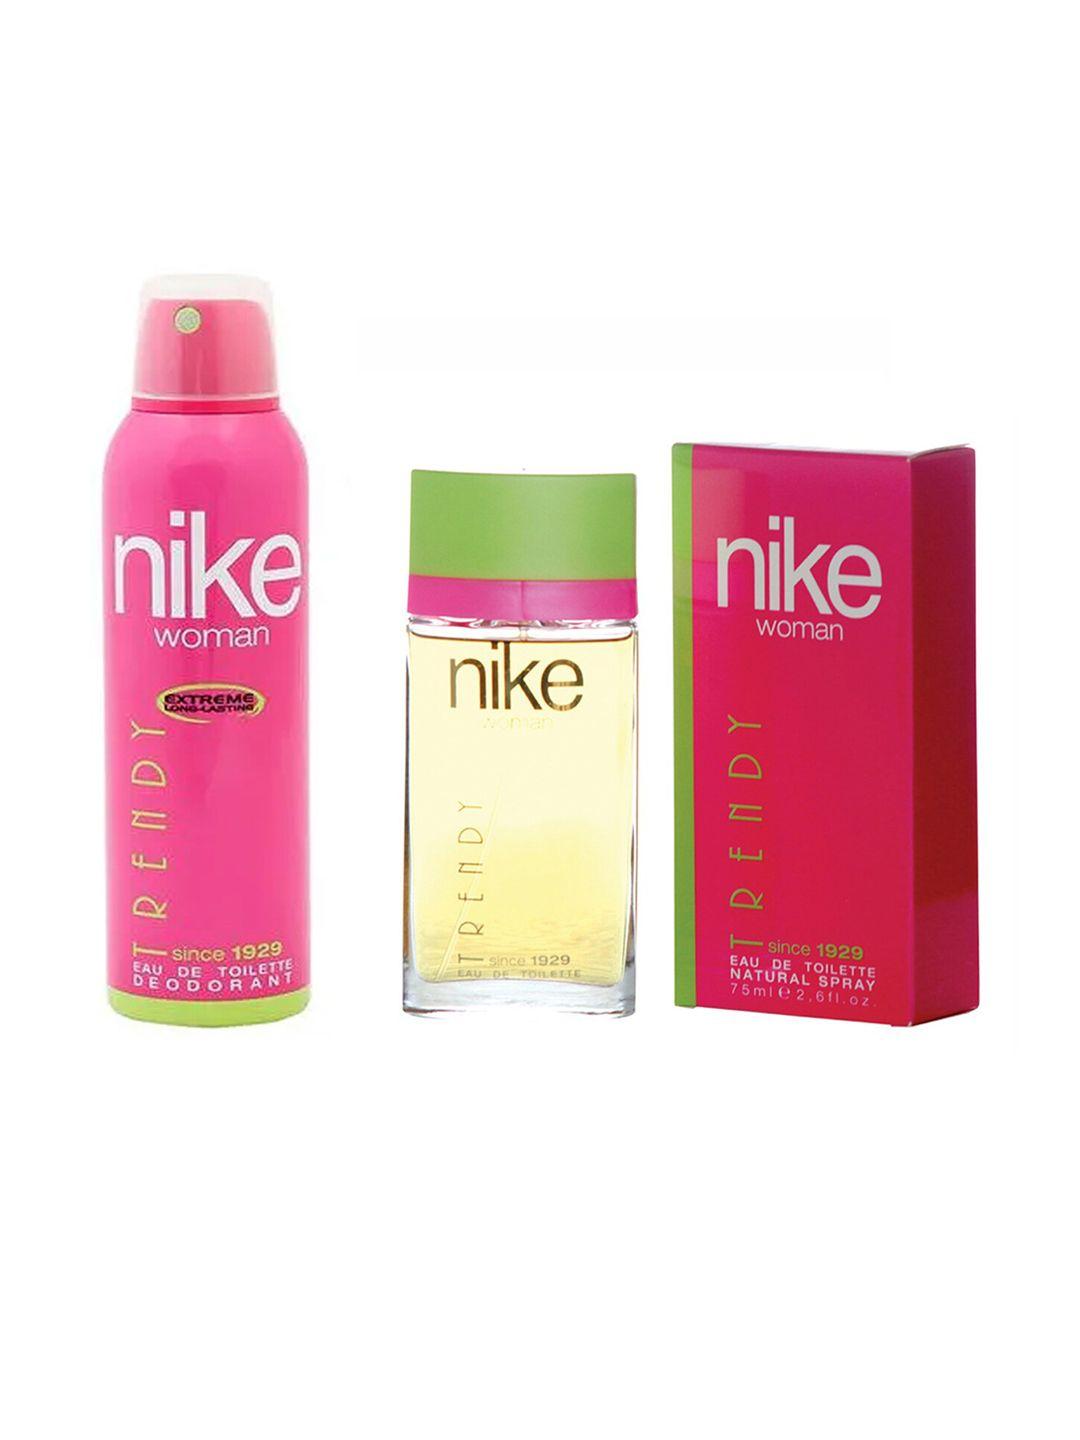 nike-women-set-of-trendy-since-1929-deodorant-200-ml-&-eau-de-toilette-75-ml